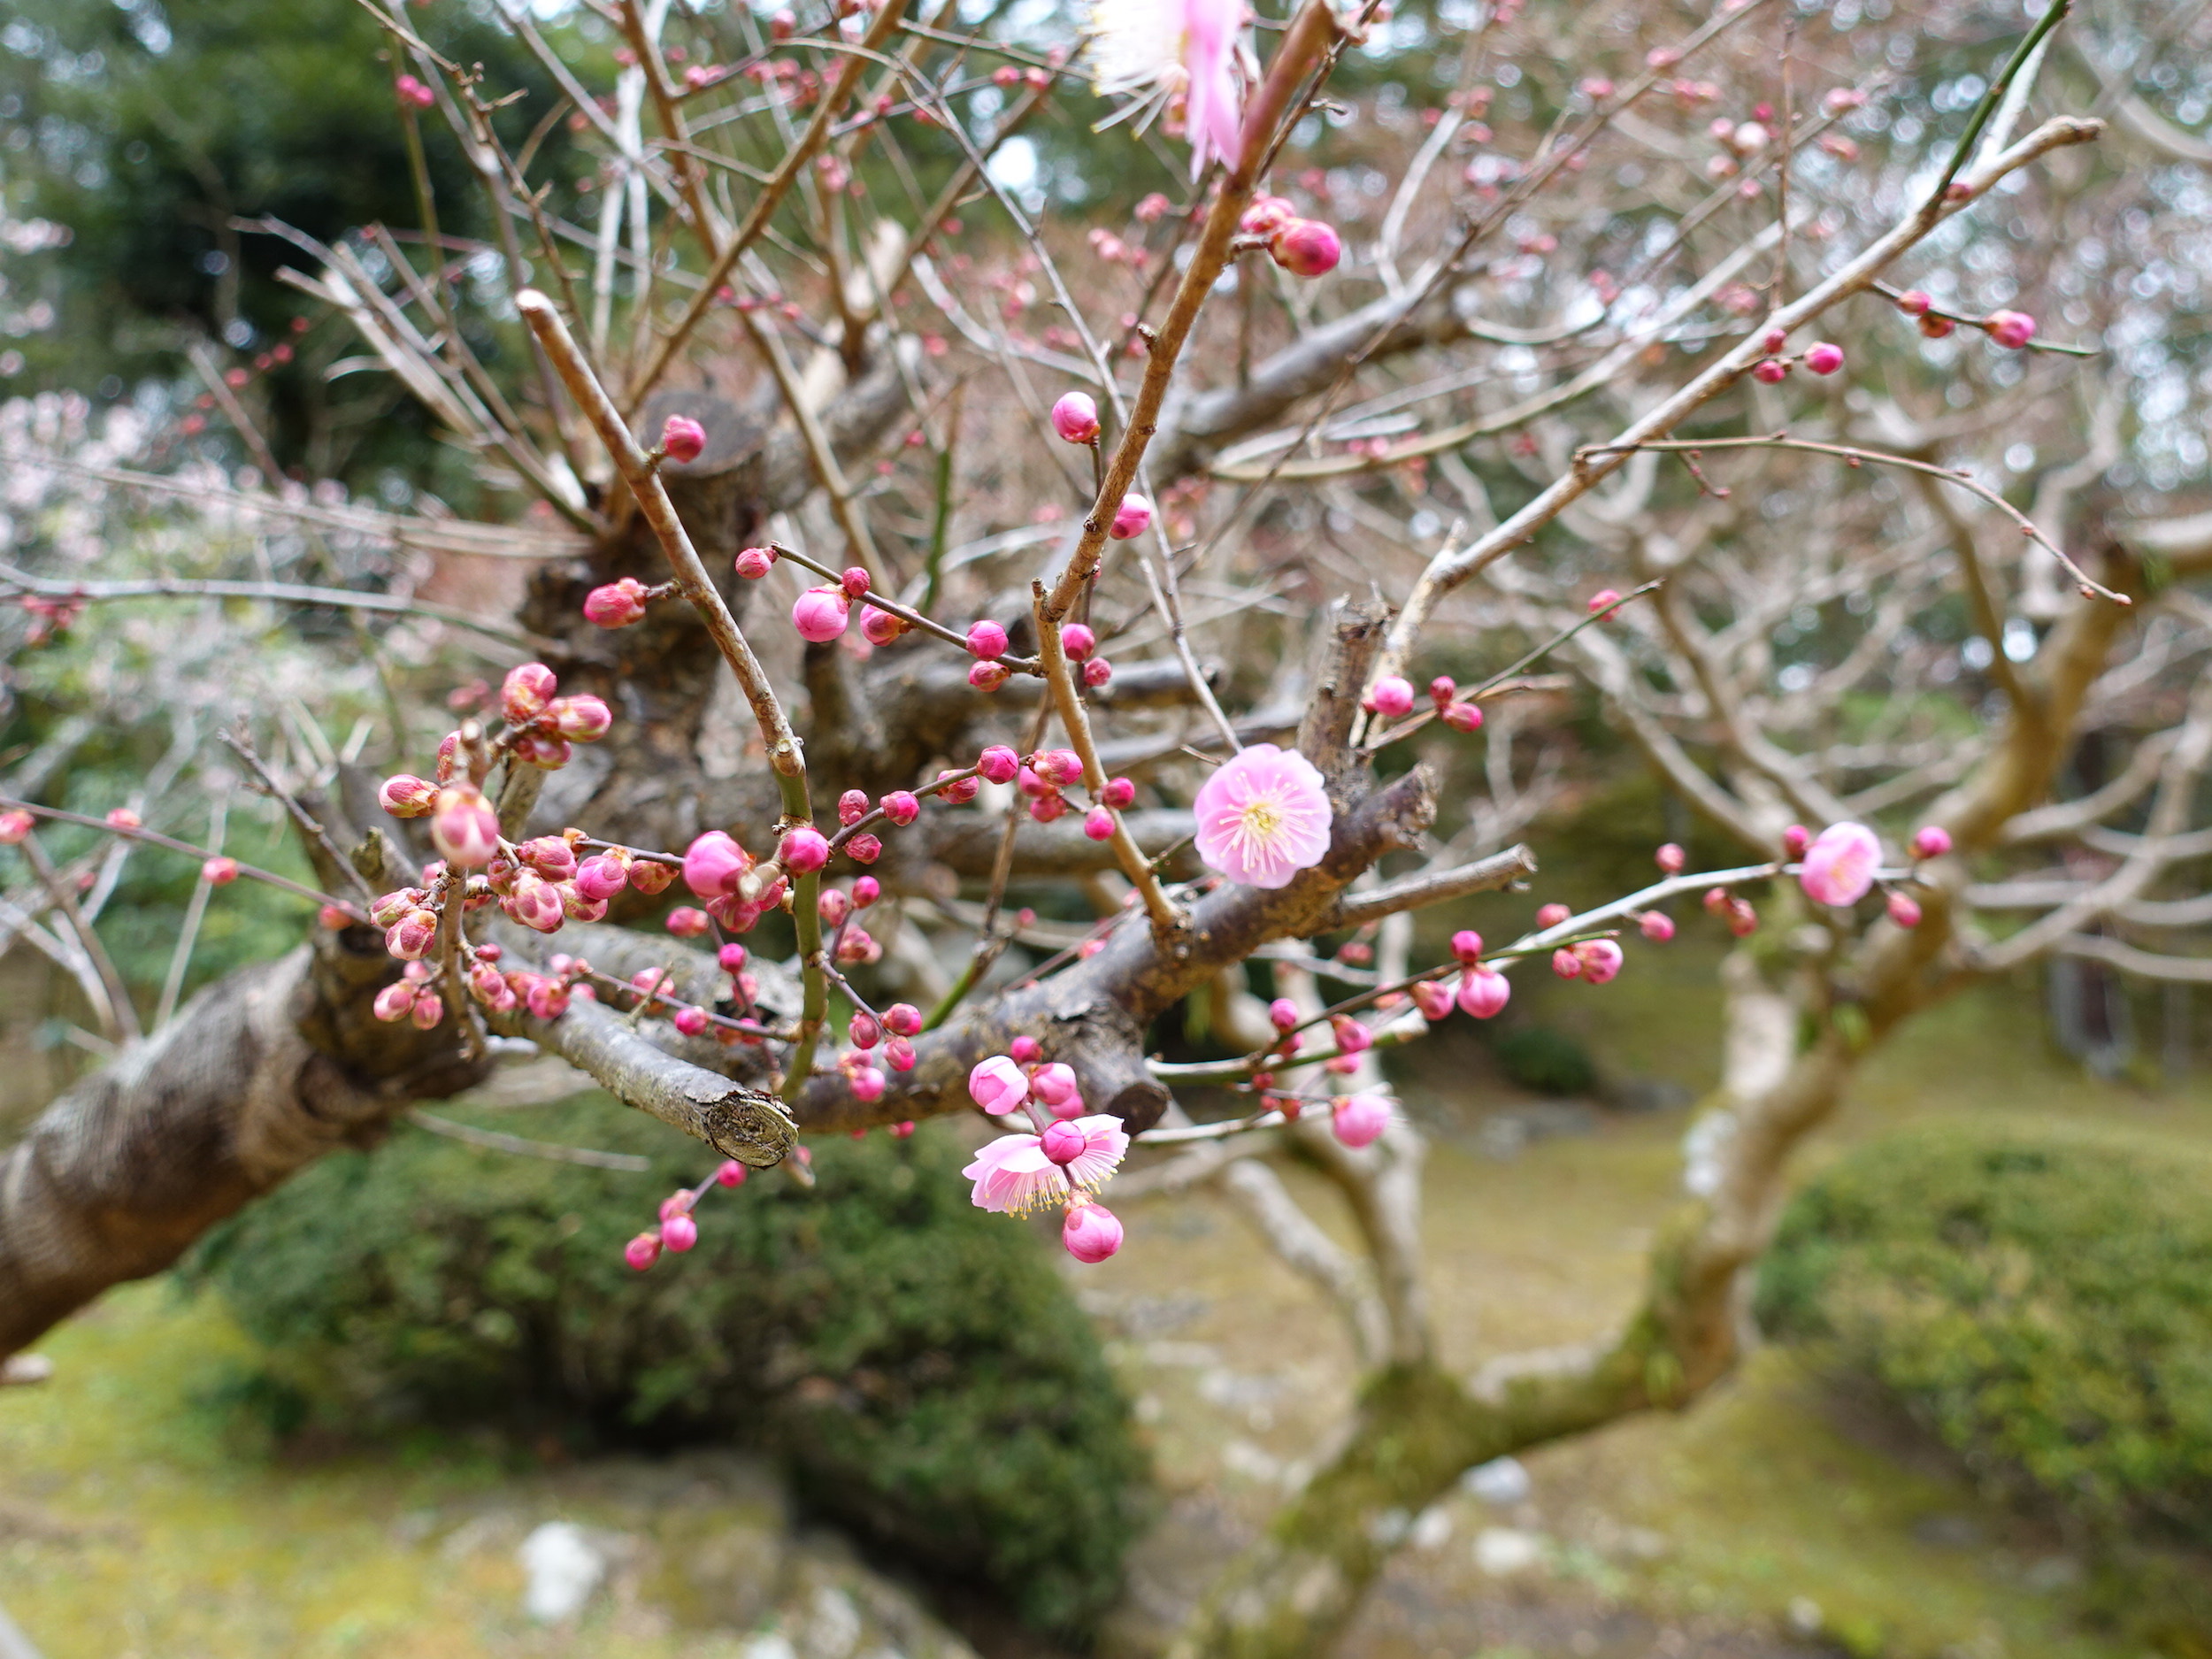 梅花祭在有名觀光地成田山盛大舉辦